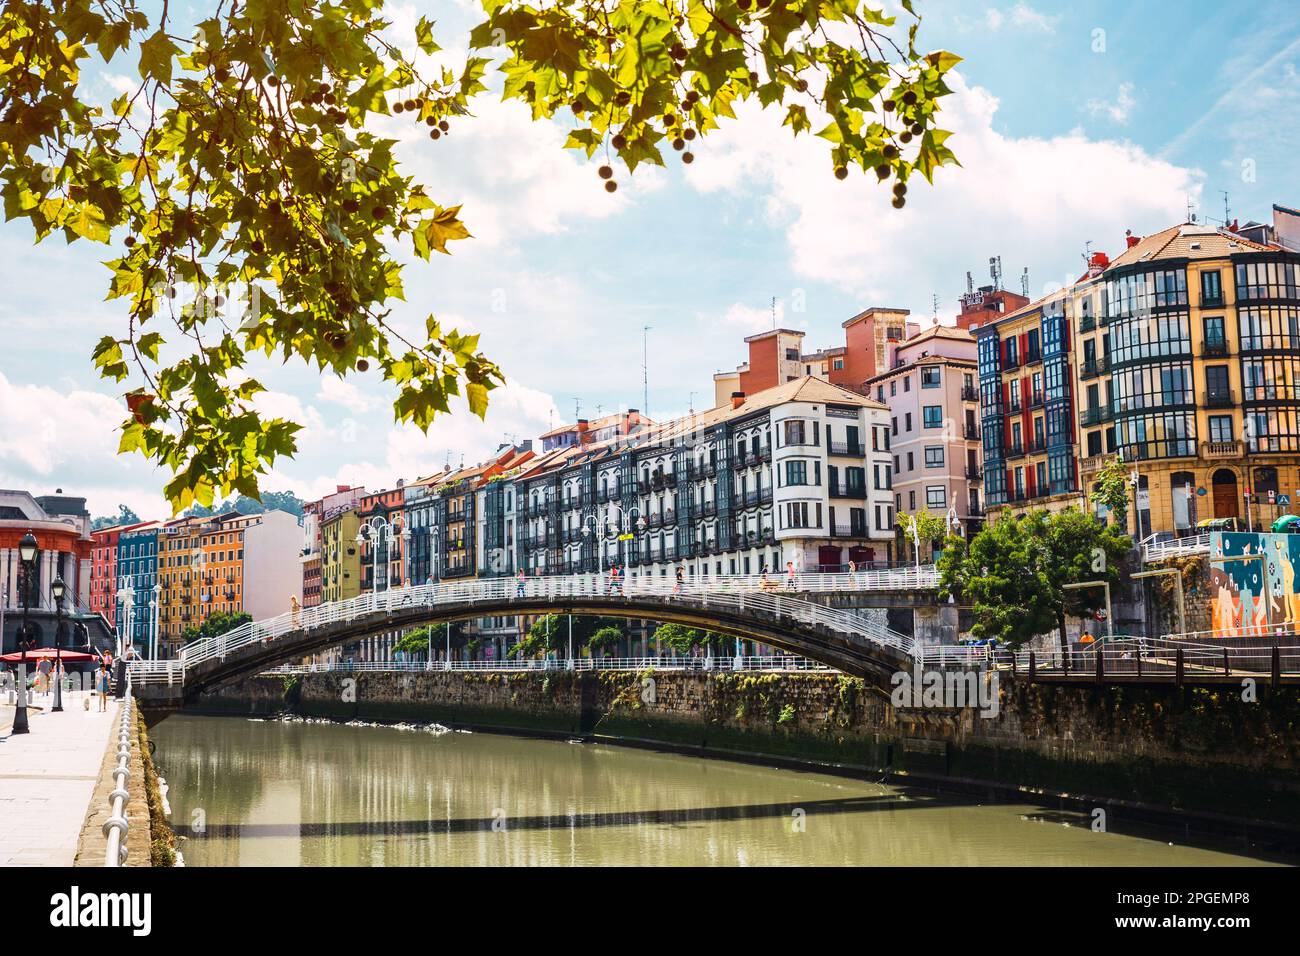 Blick auf die Innenstadt von Bilbao mit dem Fluss Nervion, der Ribera-Brücke und seiner farbenfrohen Architektur an einem sonnigen Tag. Ich genieße einen schönen Urlaub im Stockfoto